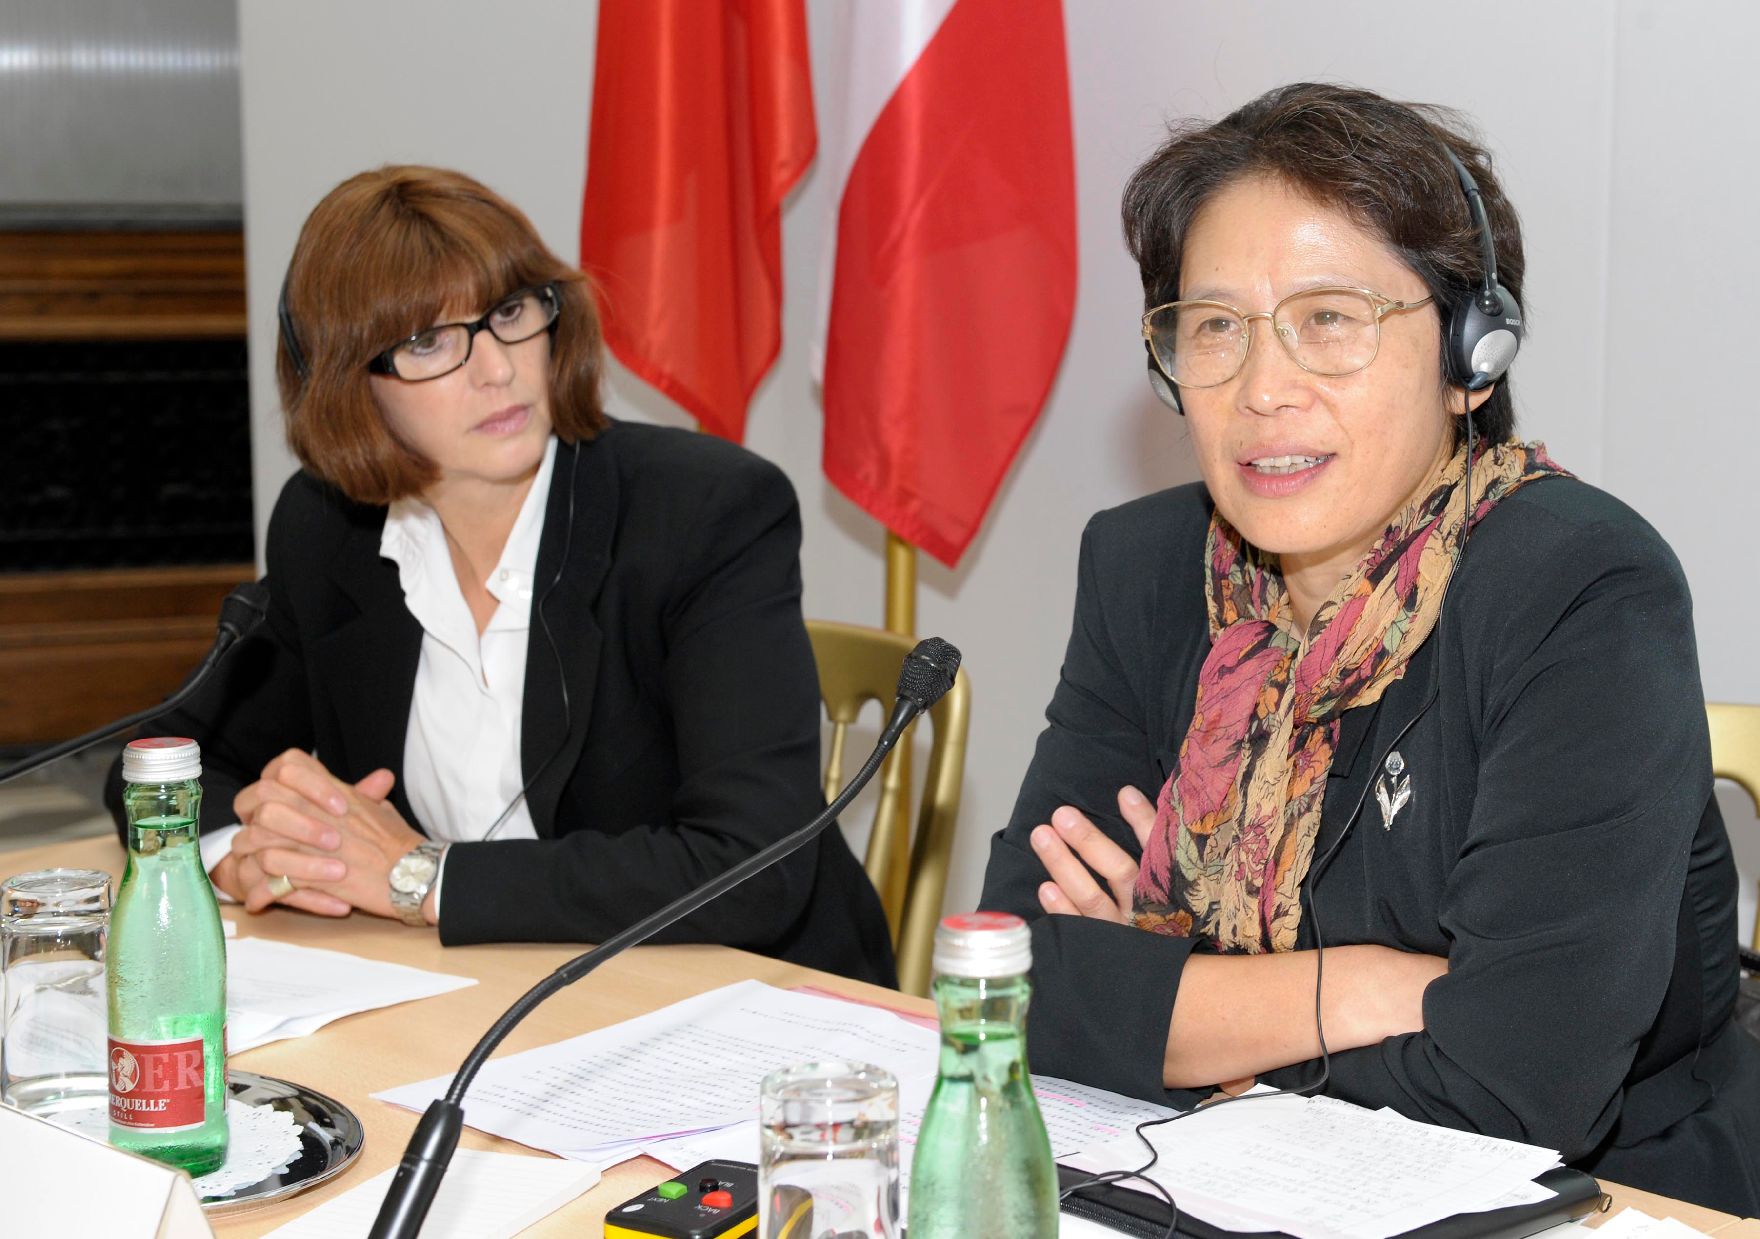 Am 14. September 2011 fand das Mediensymposium Österreich-China in Wien statt. Im Bild (l.) Margaretha Kopeinig (Moderation) und (r.) Zhou Hong (Europa-Institut der chinesischen Akademie).